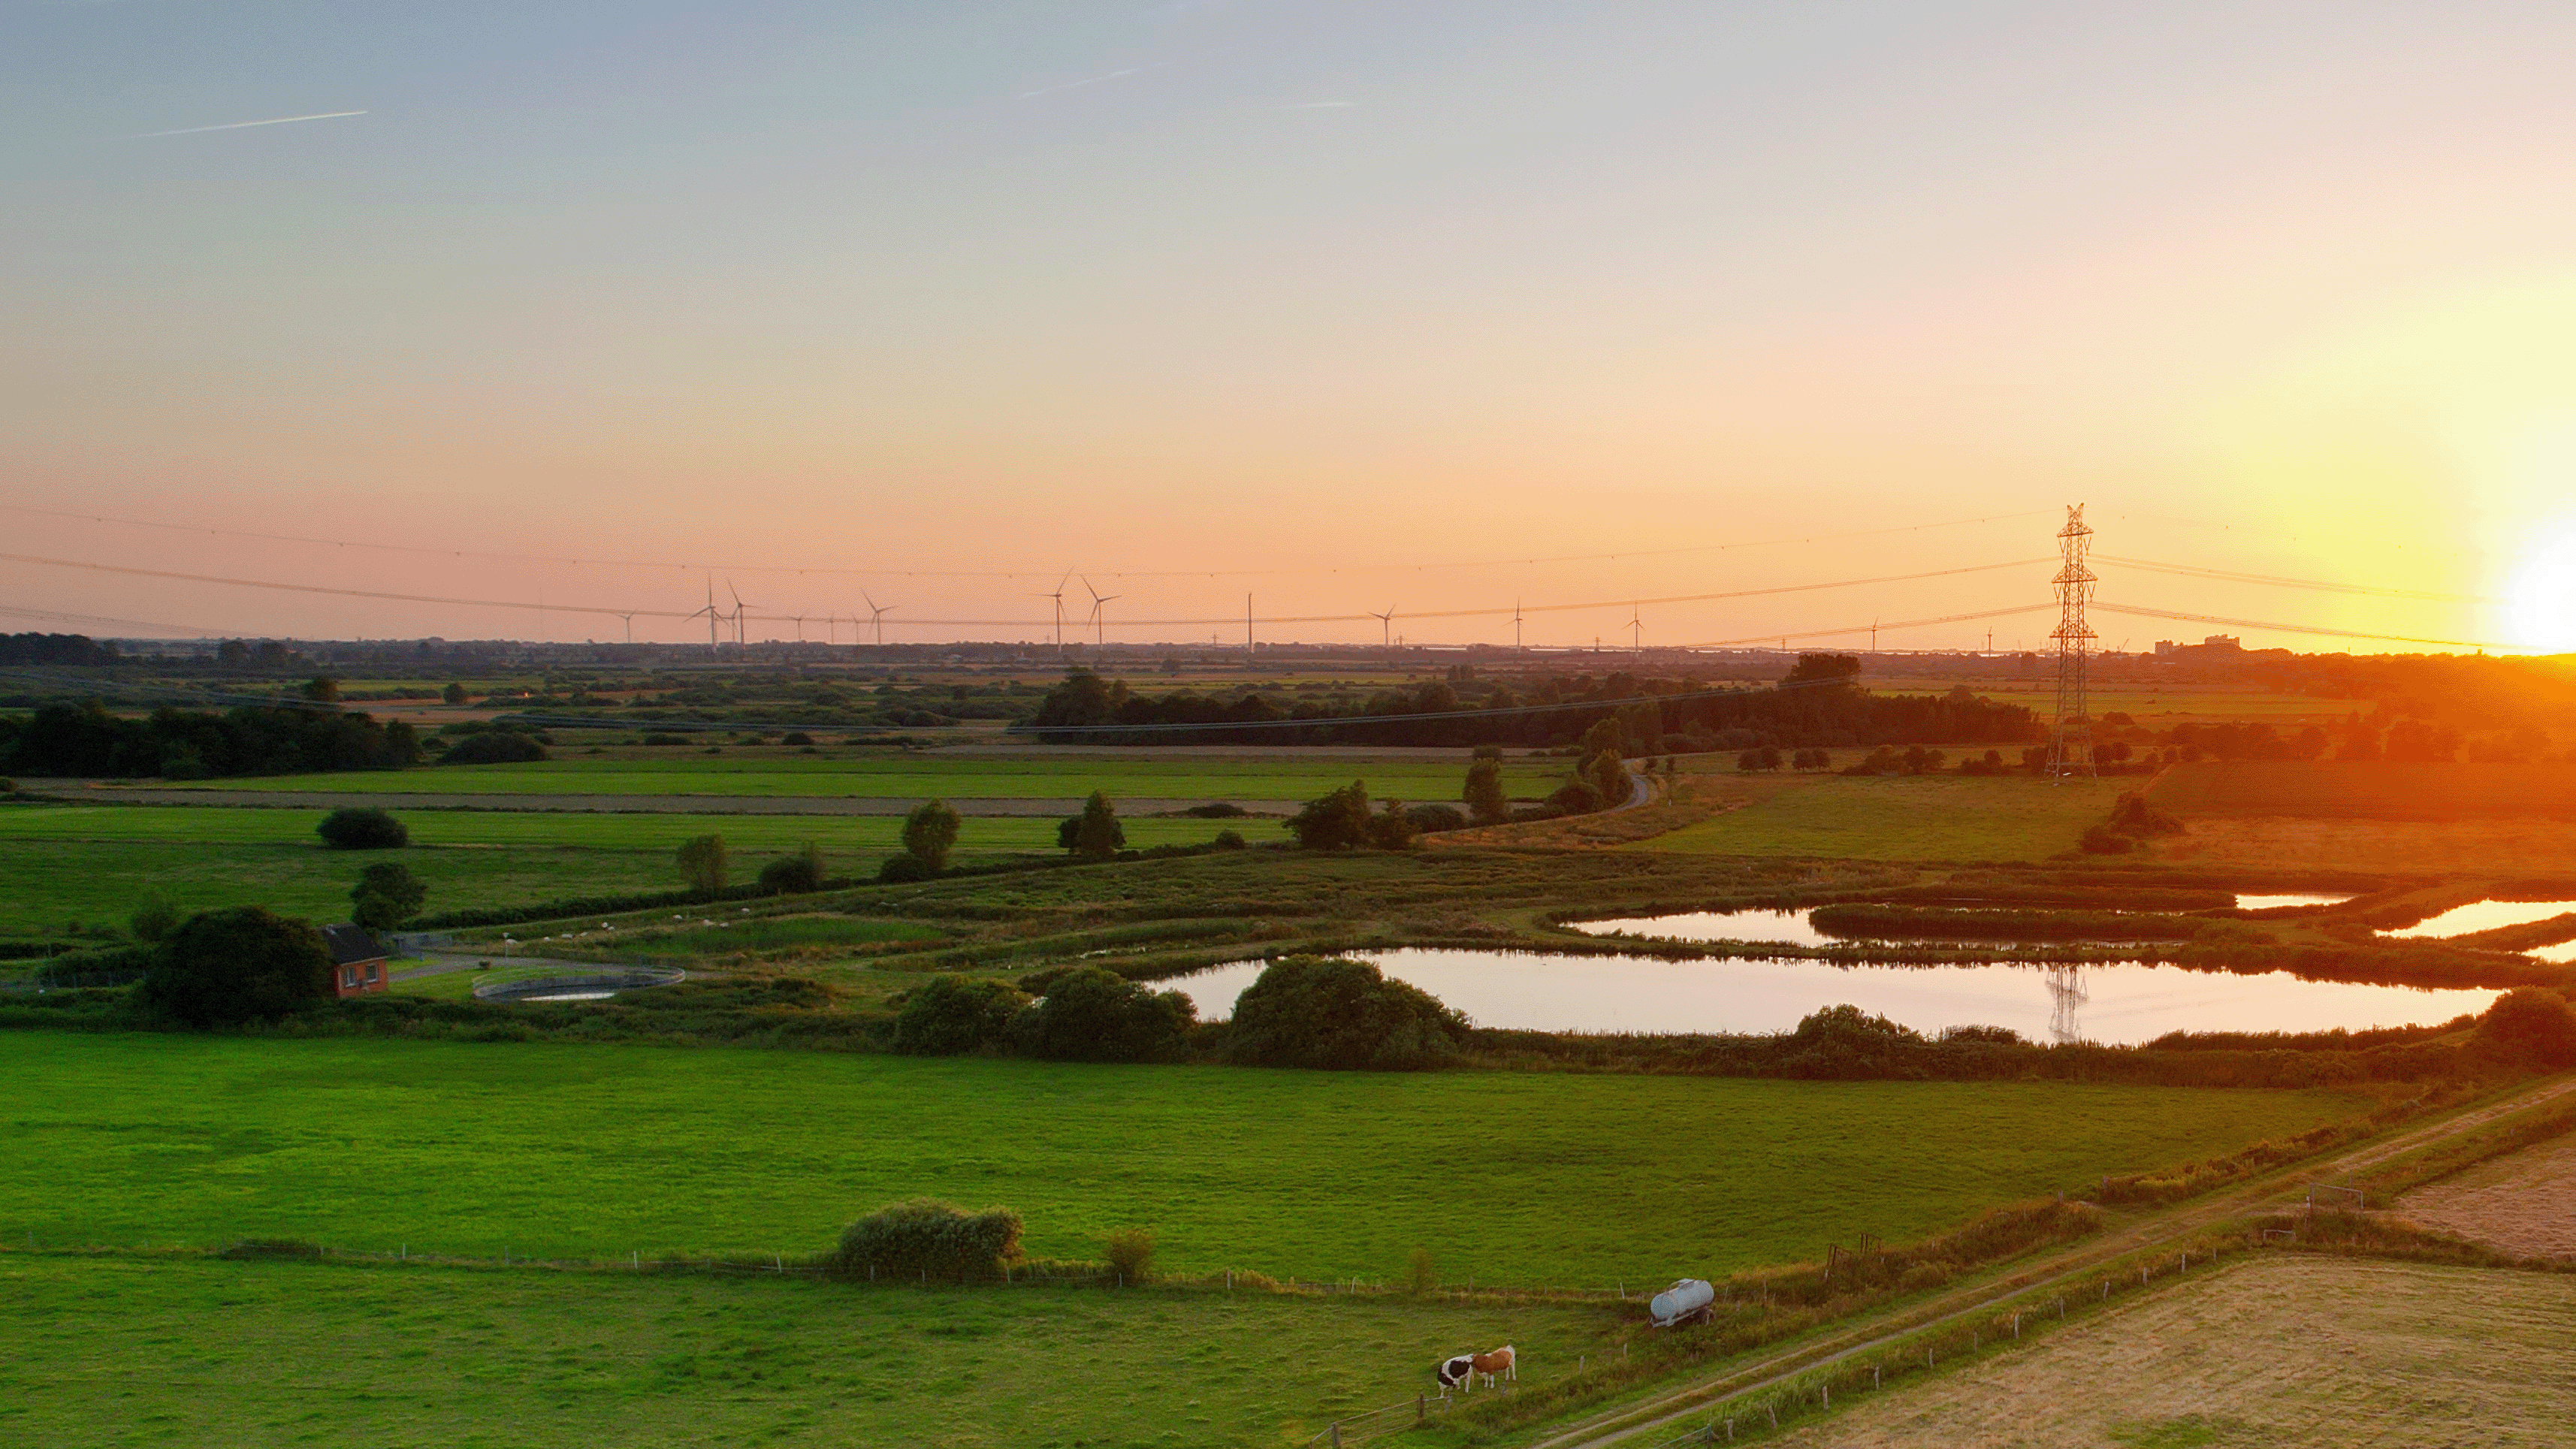 Wiesen und Felder mit Kühen in Nordfriesland bei Sonnenuntergang. In der Ferne sind Windkraftanlagen.